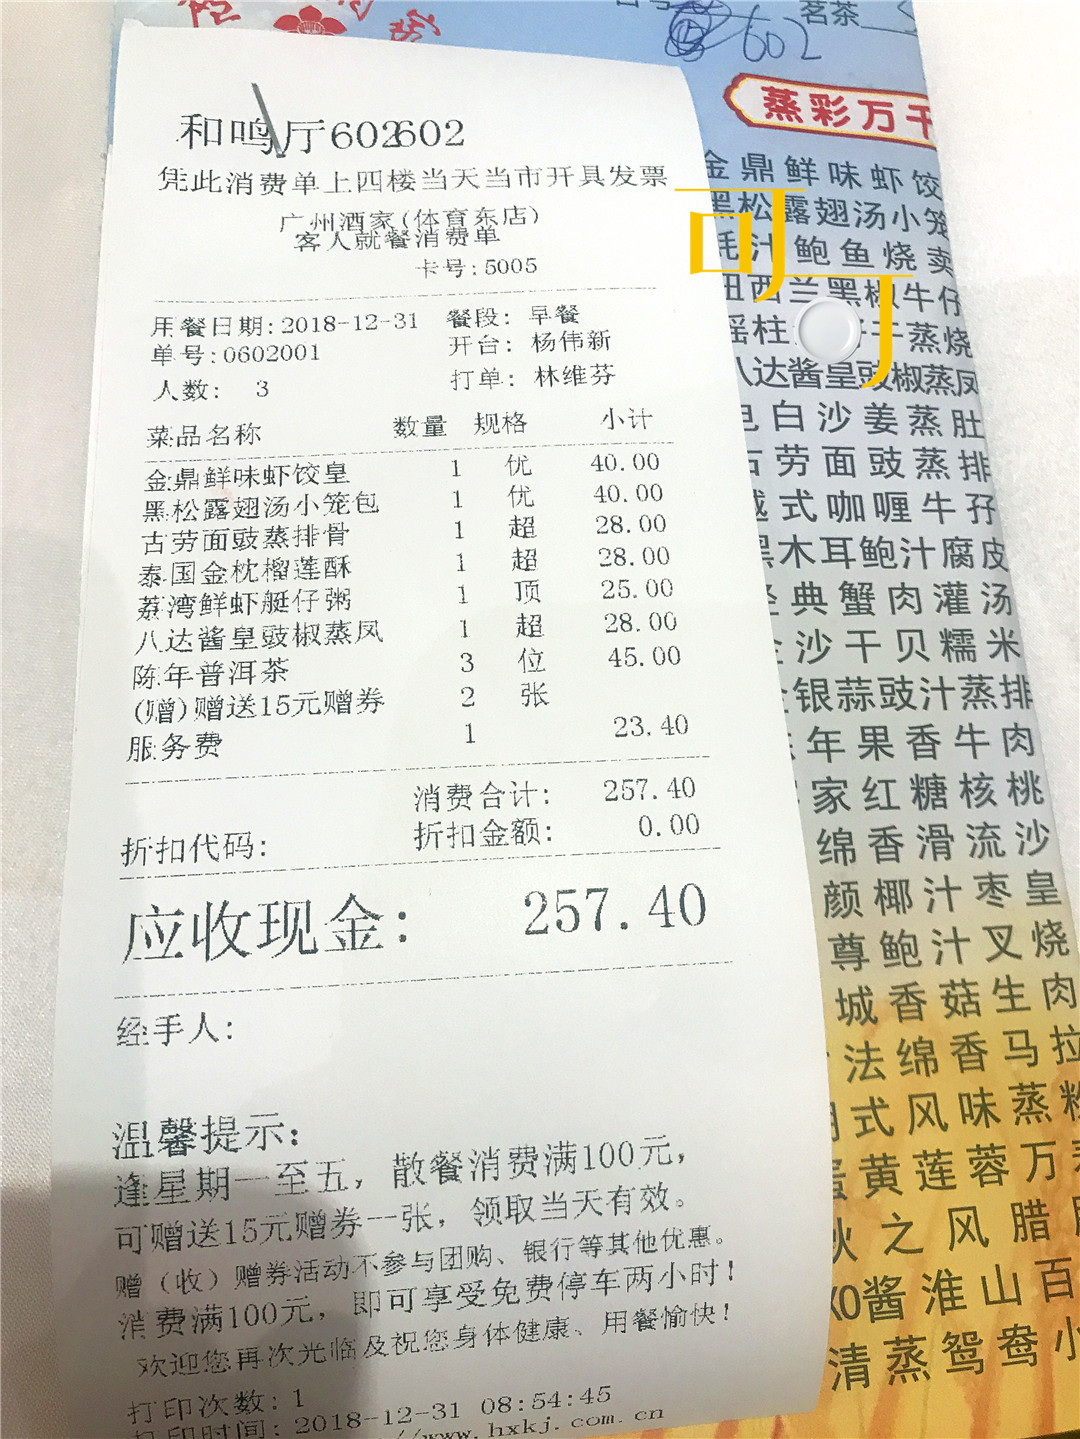 可可的广州跨年之旅:除了水晶虾饺,广州酒家的早茶还吃了些啥?